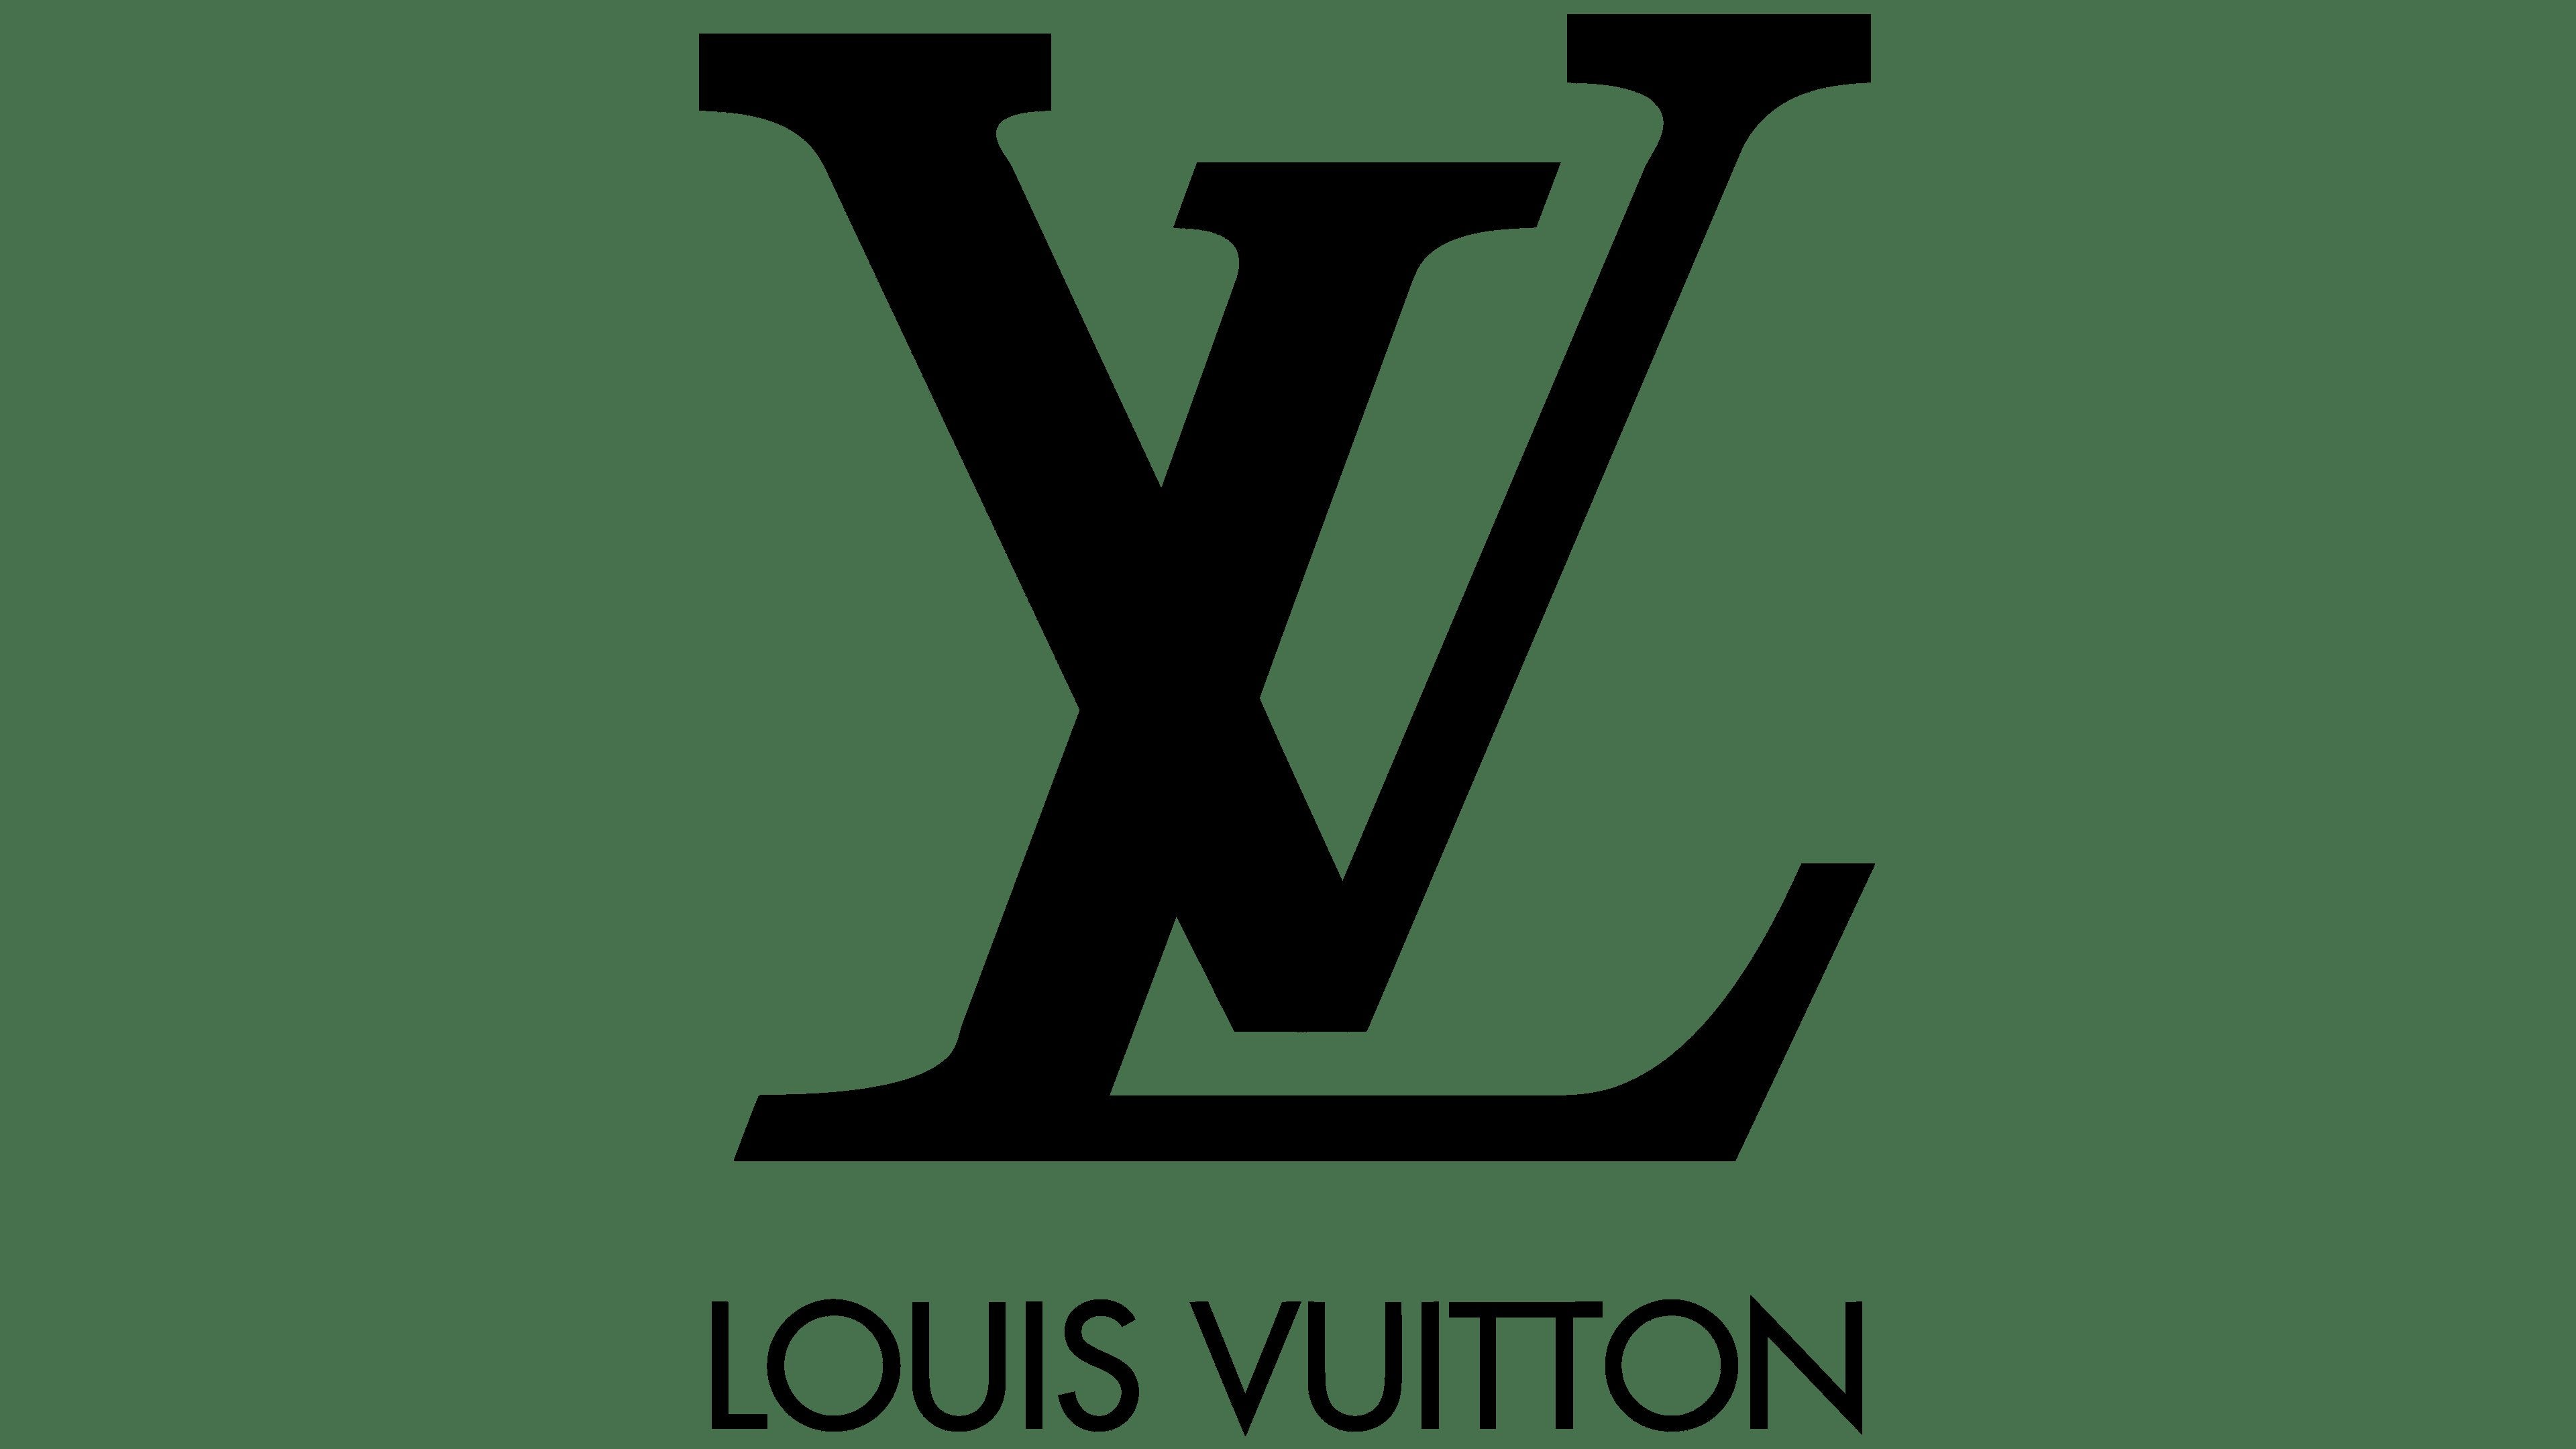 Louis Vuitton Reisetaschen Second Hand: Louis Vuitton Reisetaschen Online  Shop, Louis Vuitton Reisetaschen Outlet/Sale - Louis Vuitton Reisetaschen  gebraucht online kaufen